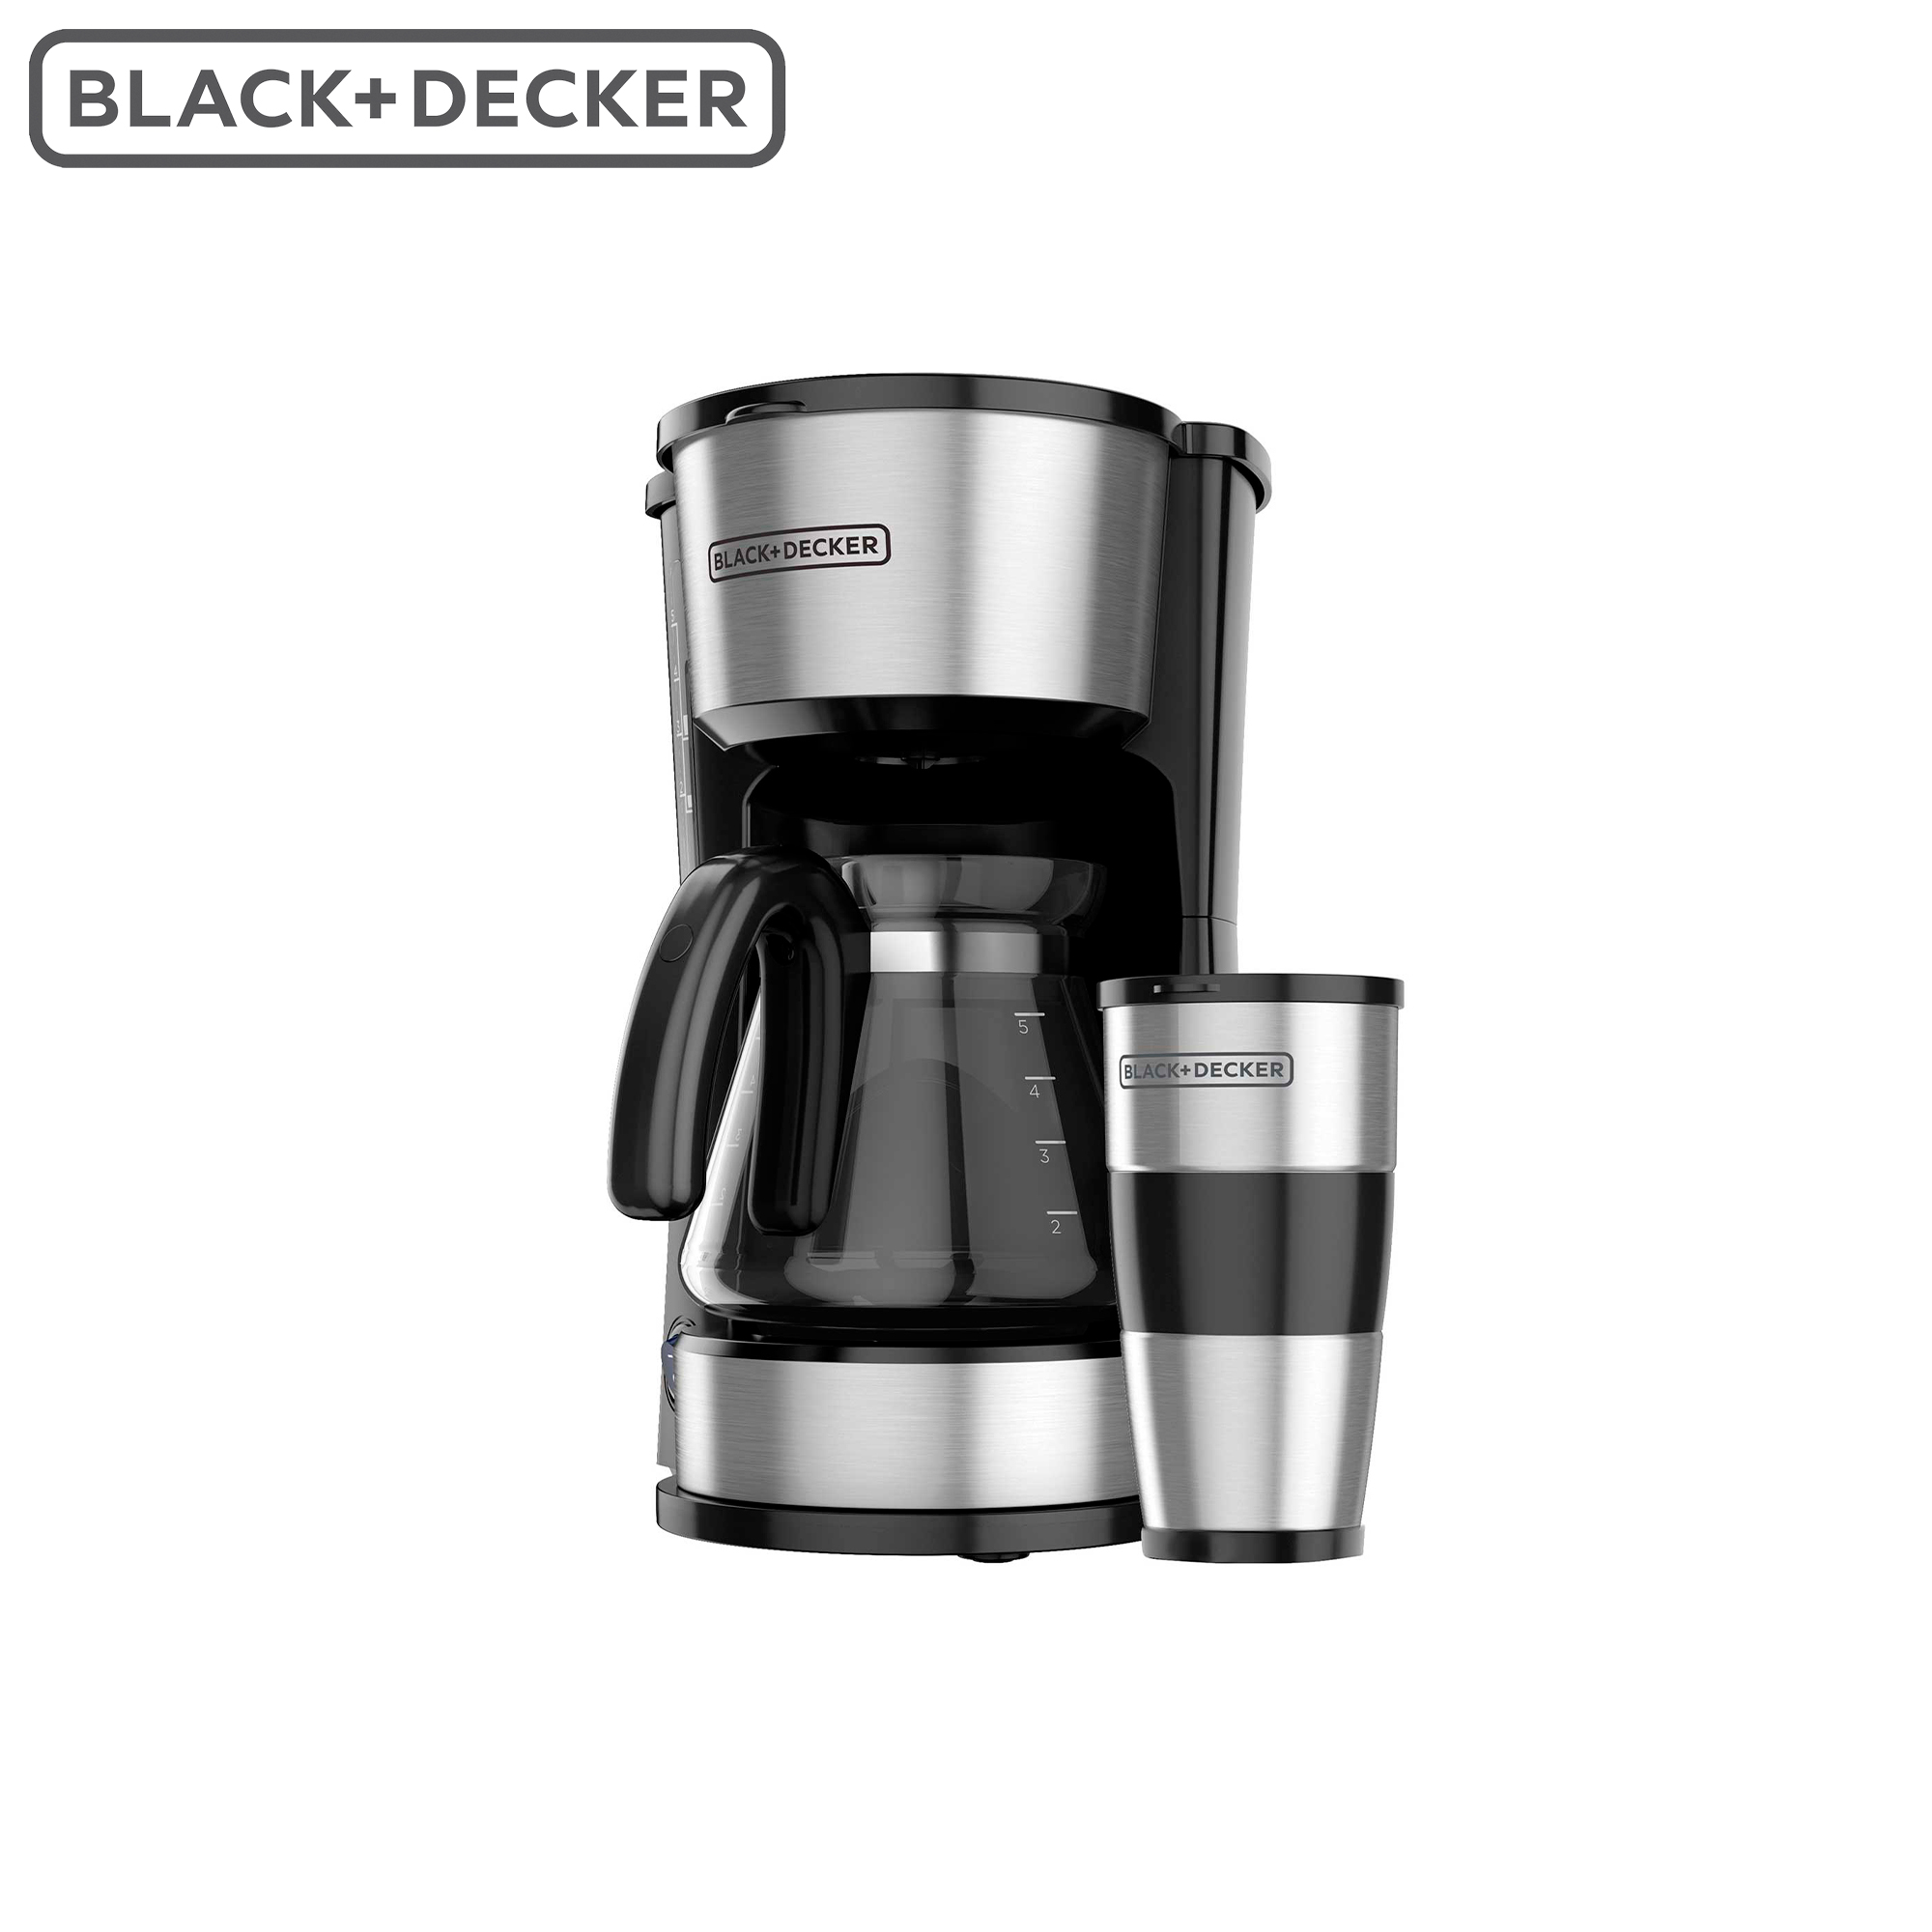 Cafetera 4 en 1 Black+Decker - Multimax Store